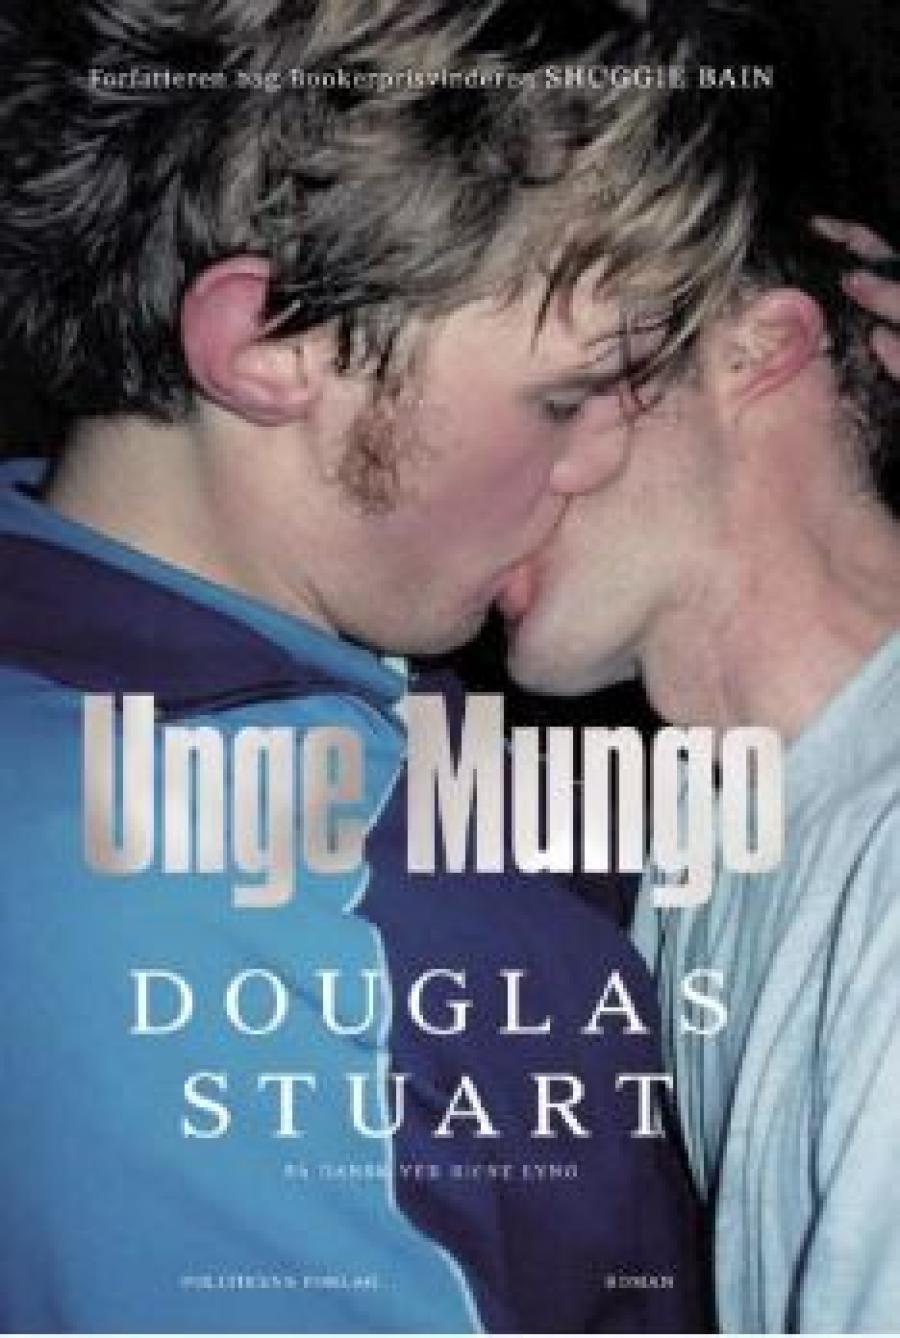 Douglas Stuart, "Unge Mungo"